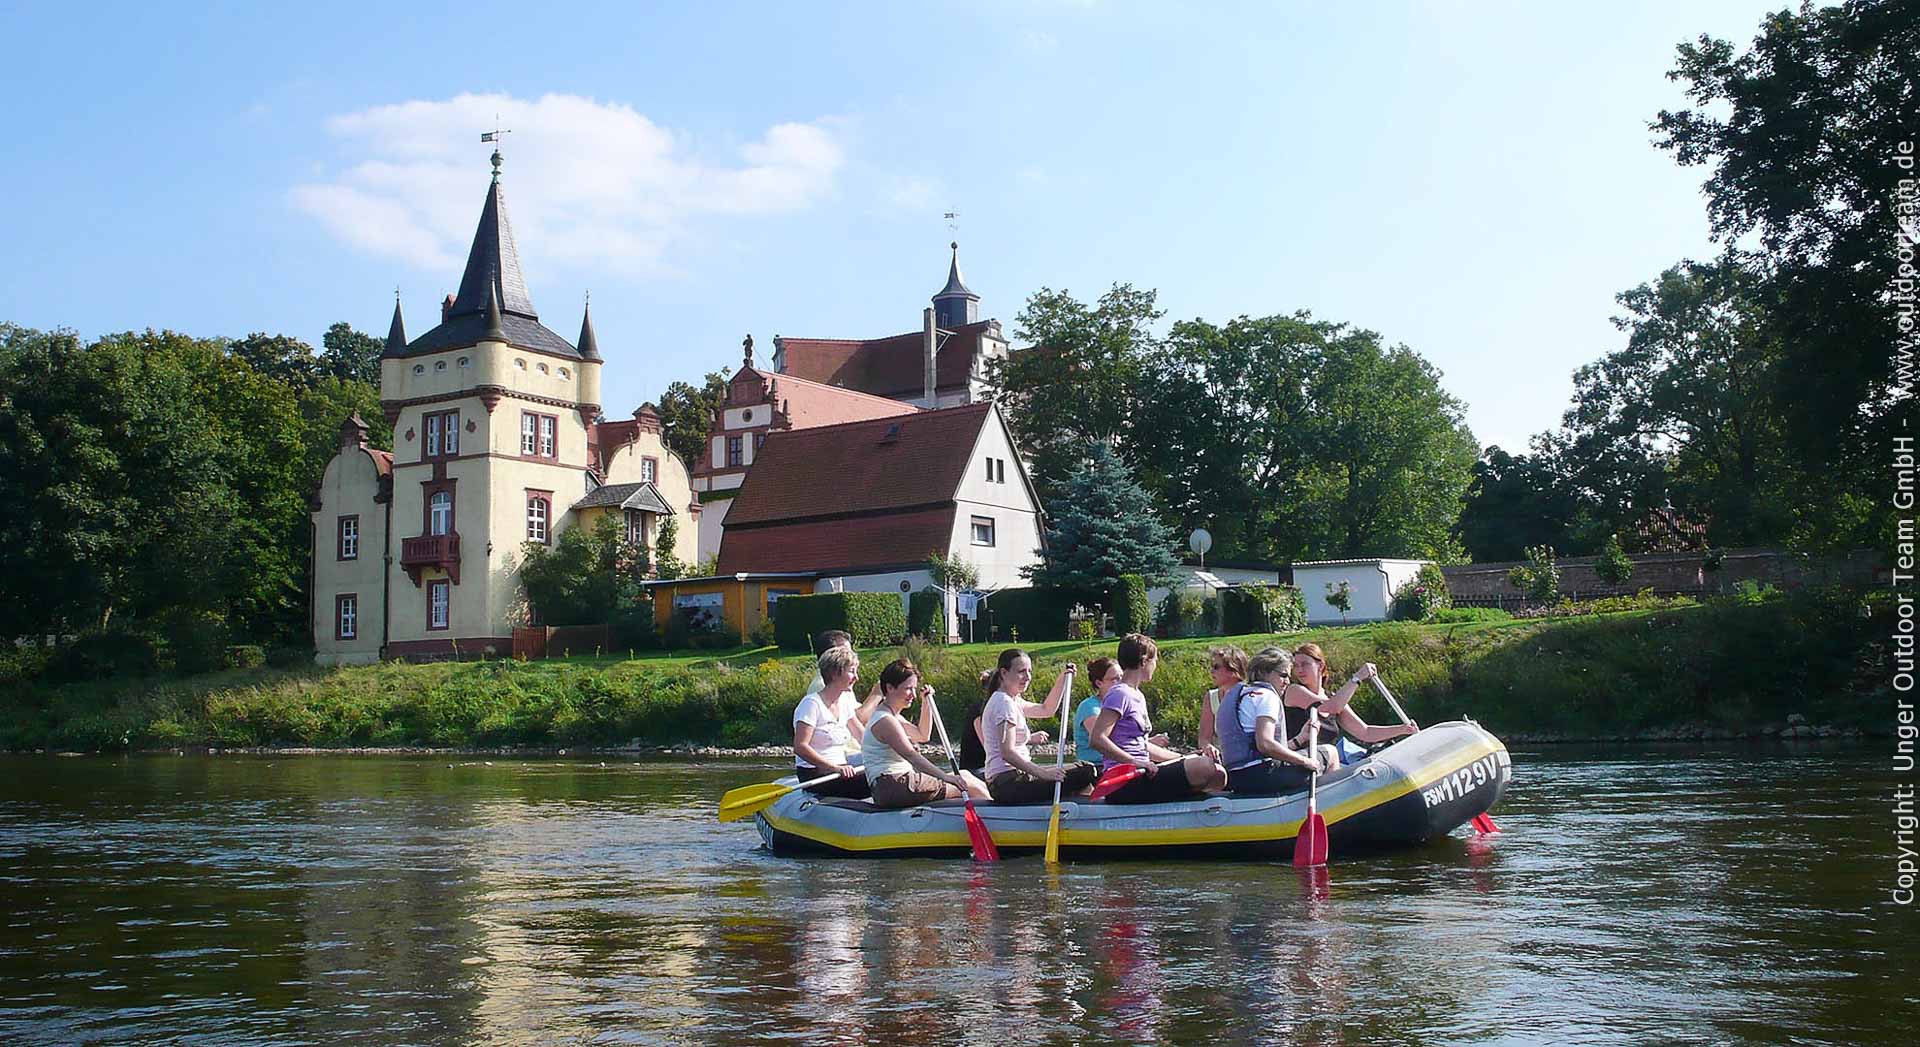 Paddelstrecke D ab Wasserschloss Podelwitz auf dem Mulde-Fluss Bestes Preis Leistungsverhältnis (für größere Gruppen) bietet das Schlauchboot "Hippo"